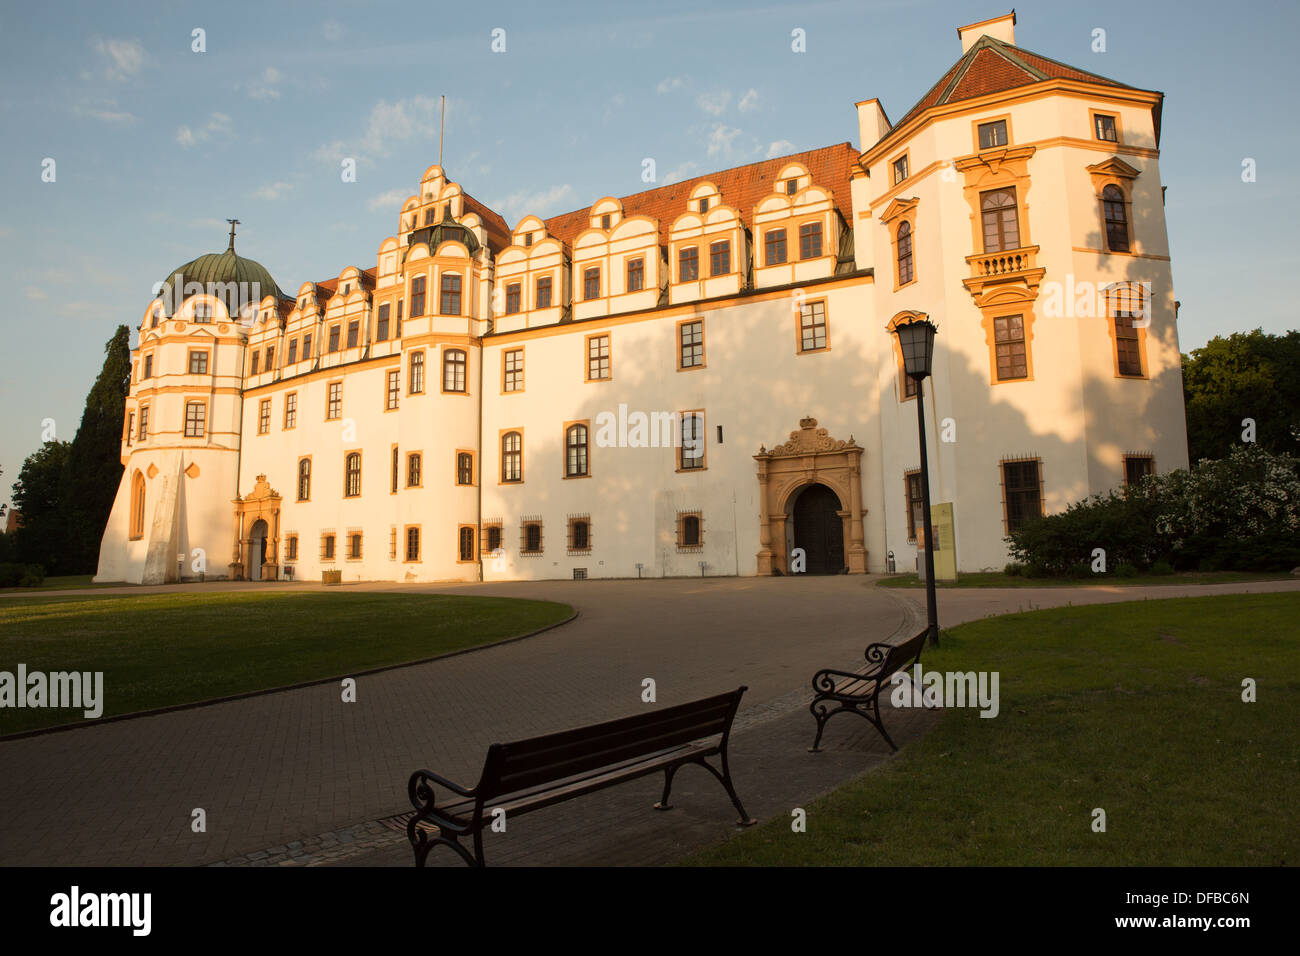 El palacio barroco en Celle, Alemania Foto de stock